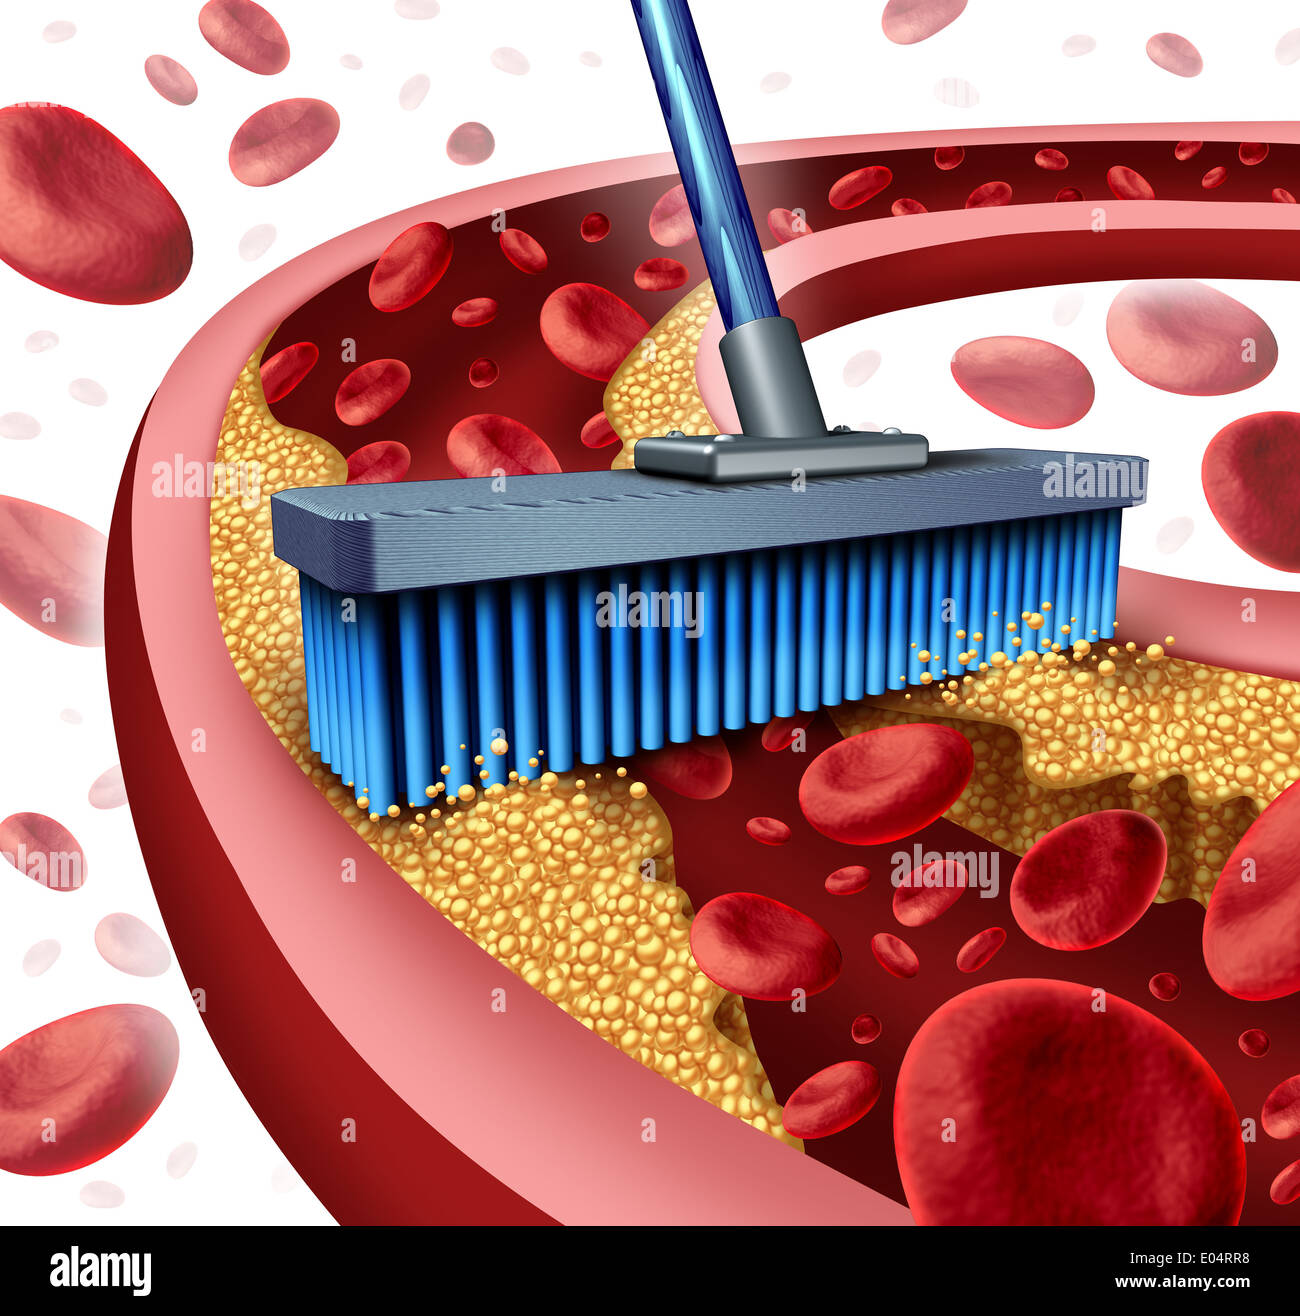 Reinigung der Arterien Konzept wie ein Besen entfernen Plaque-Bildung in eine verstopfte Arterie als Symbol der Atherosklerose Krankheit medizinische Stockfoto